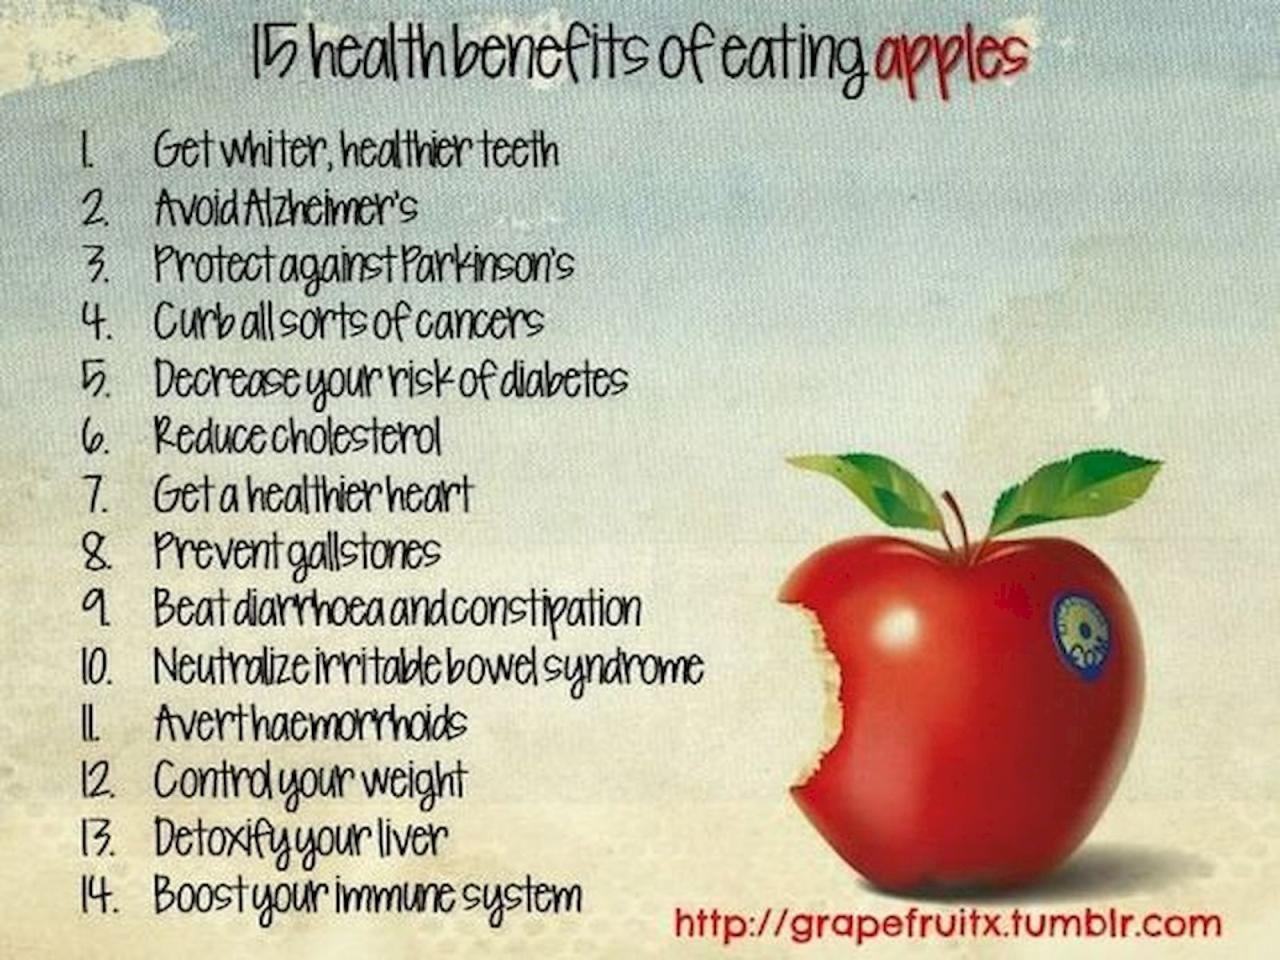 Manfaat makan buah apel setiap hari